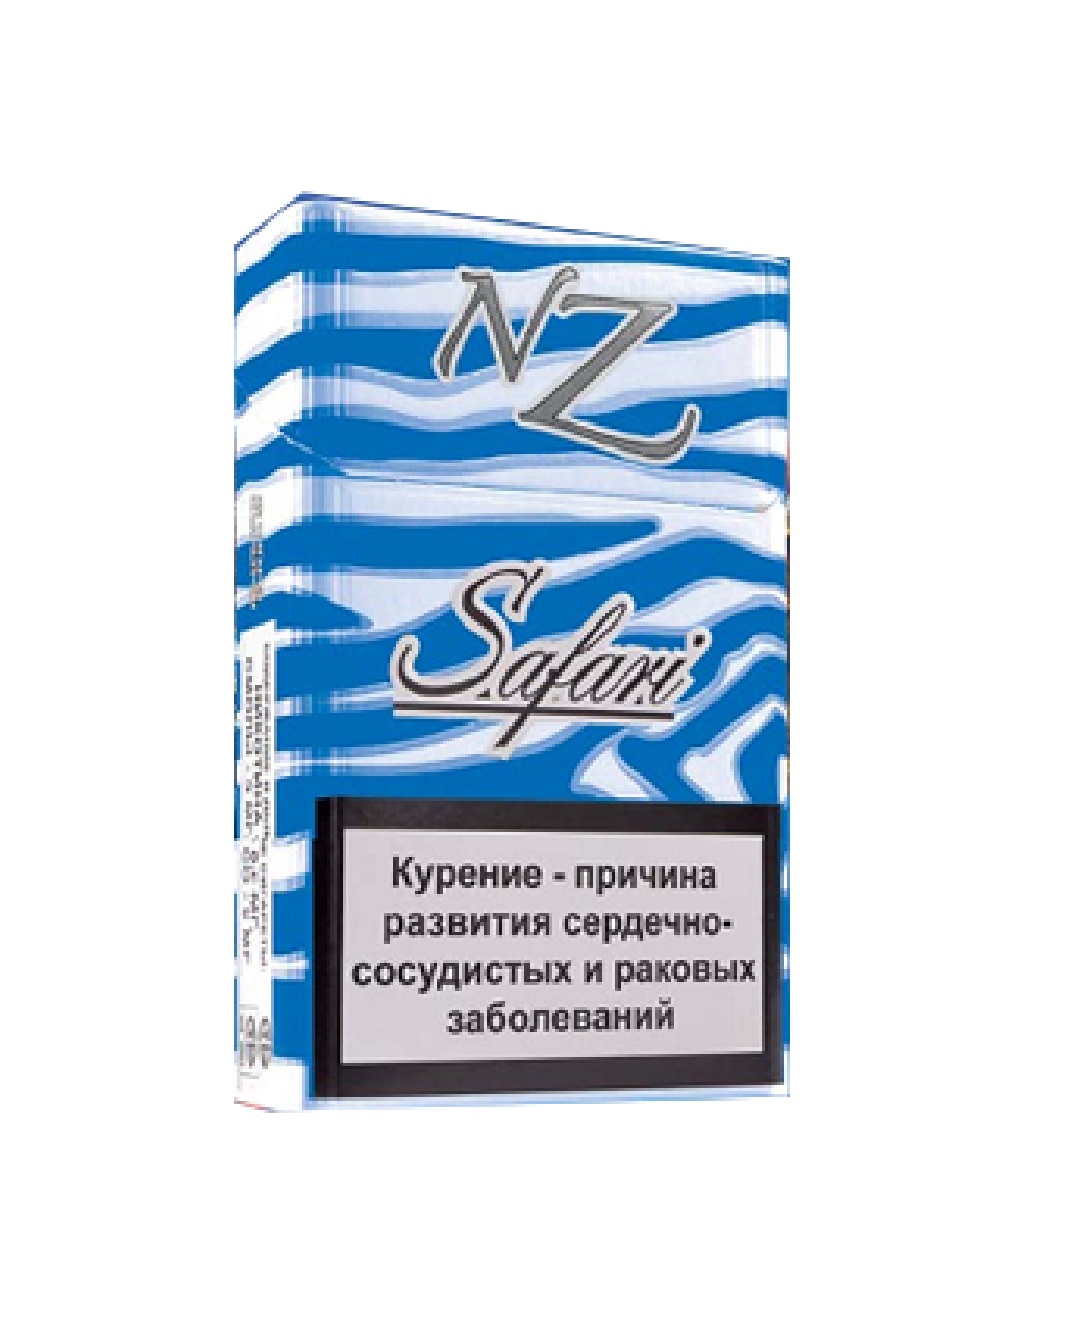 Gold compact. НЗ сигареты Белоруссия 10. Белорусские сигареты nz Safari. Сигареты nz Safari компакт. Белорусские сигареты НЗ сафари.